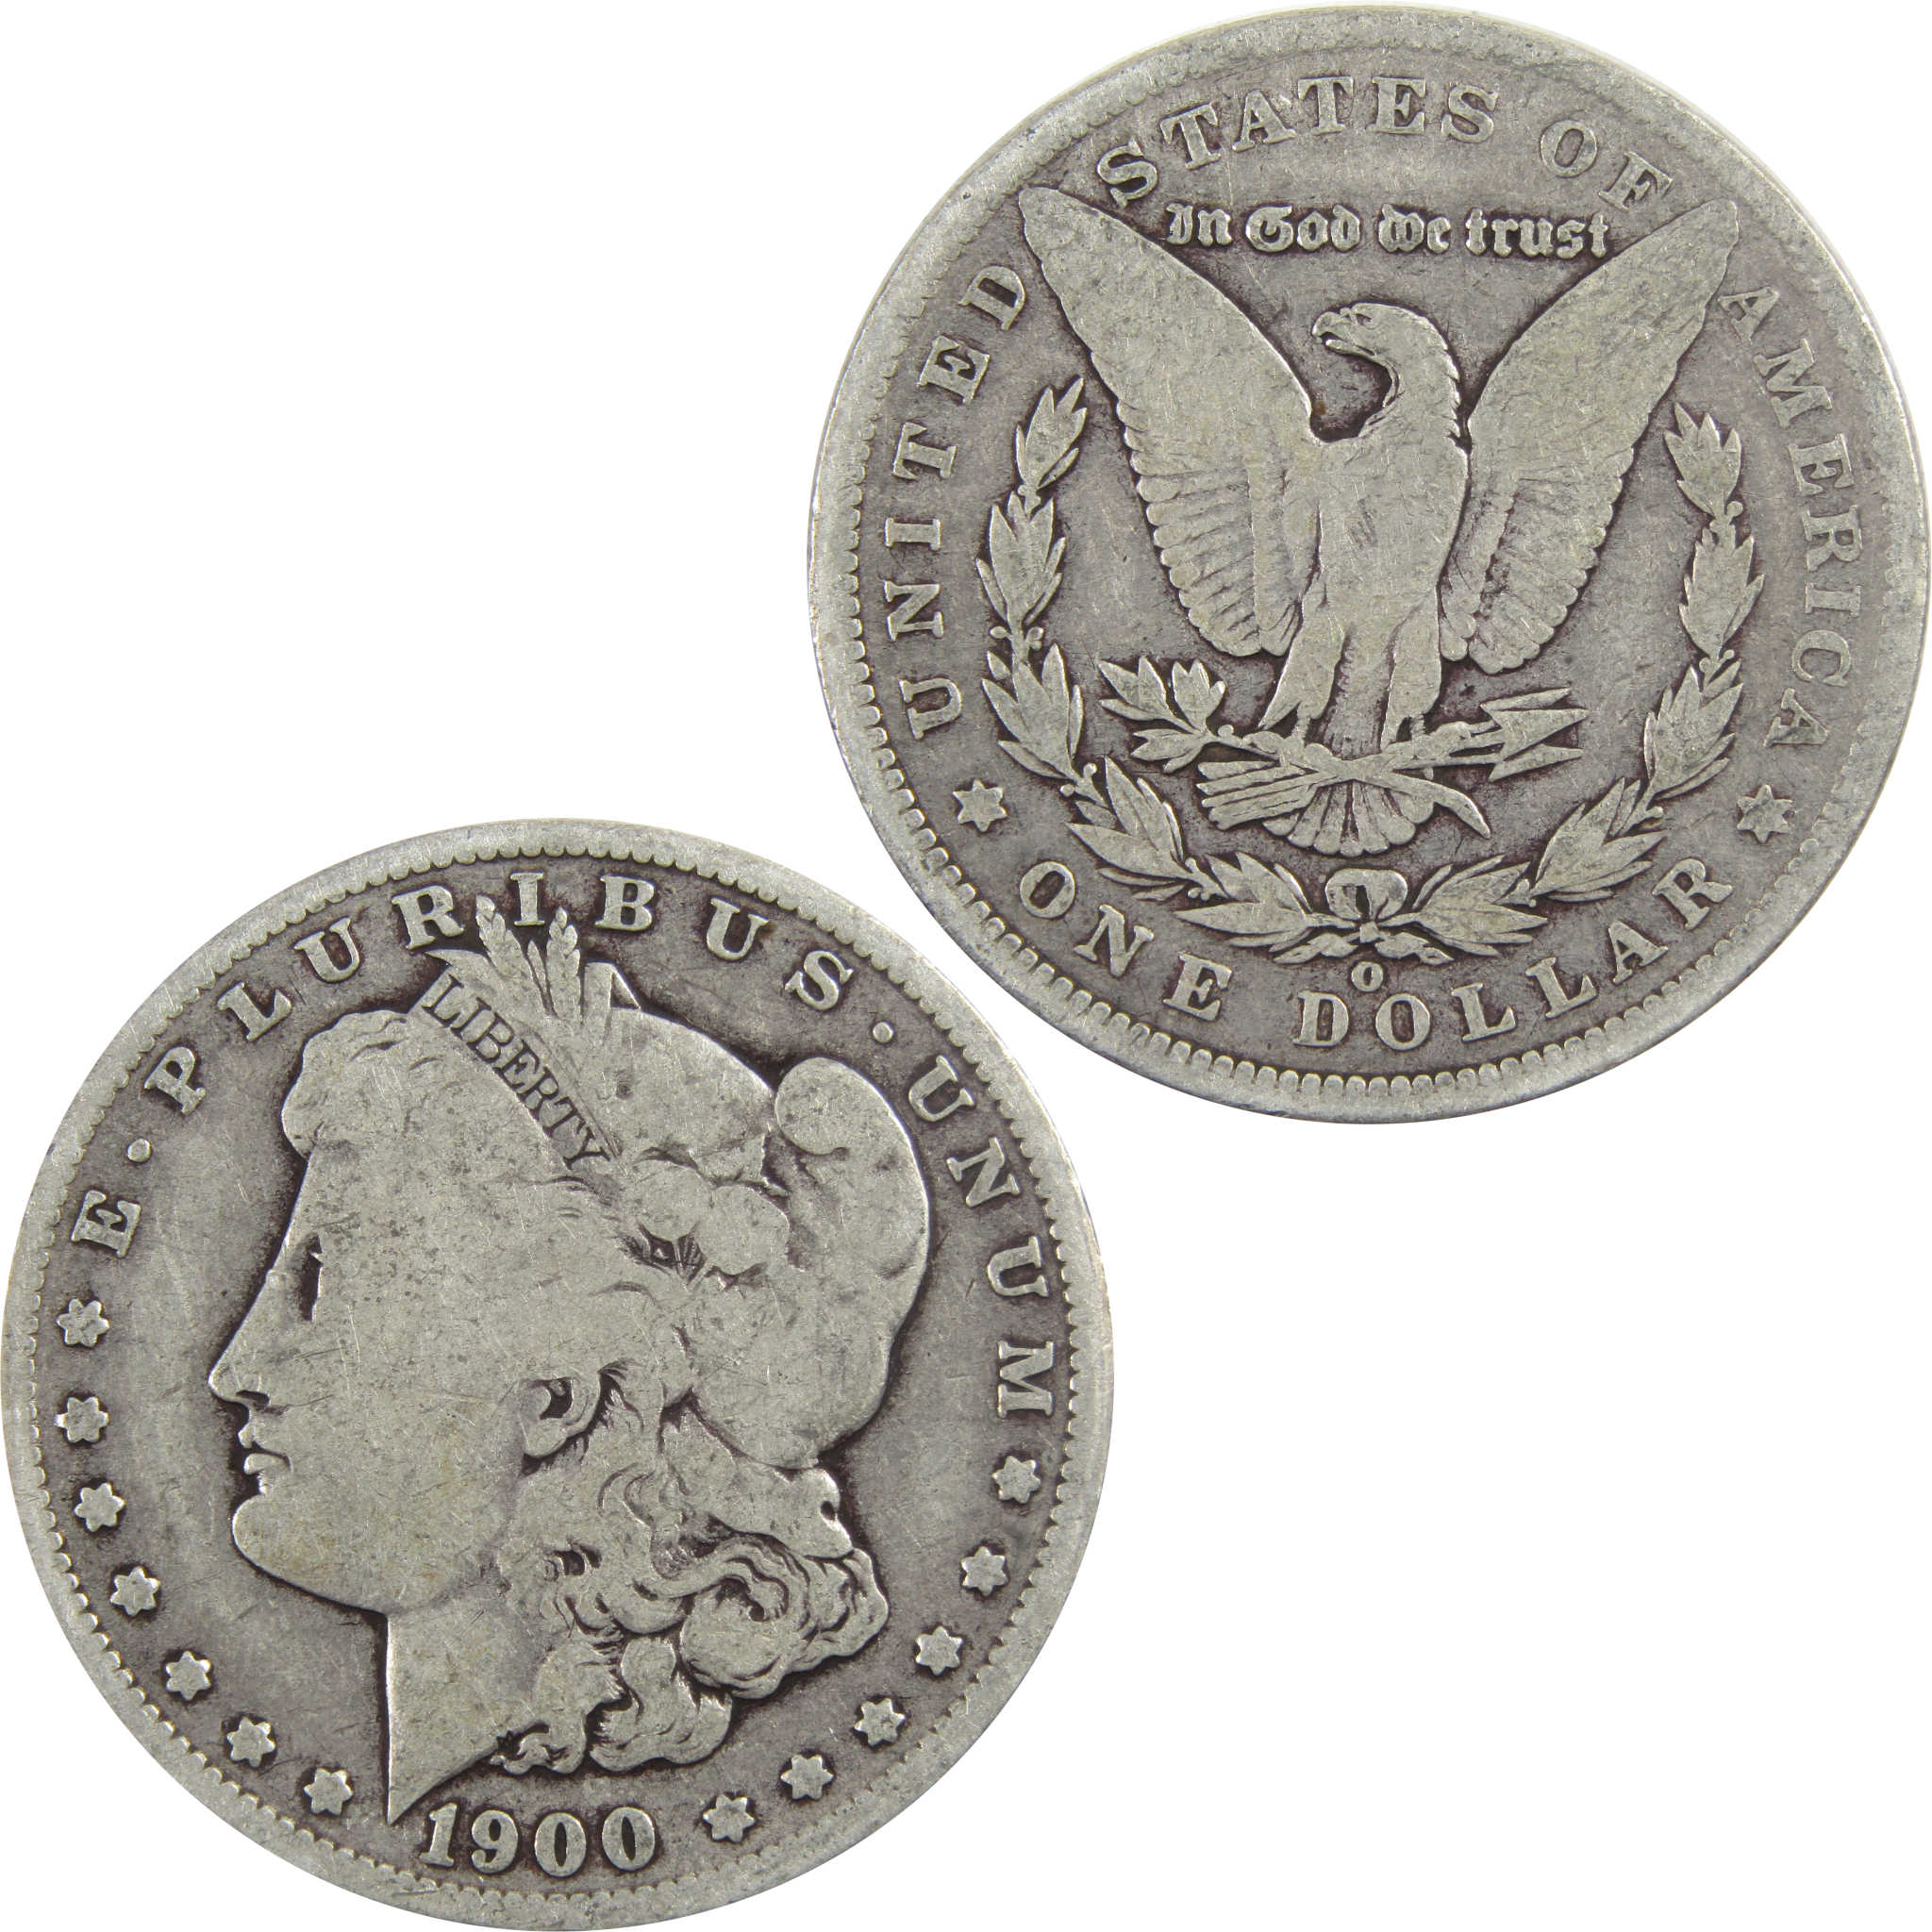 1900 O Morgan Dollar VG Very Good 90% Silver $1 Coin SKU:I5548 - Morgan coin - Morgan silver dollar - Morgan silver dollar for sale - Profile Coins &amp; Collectibles